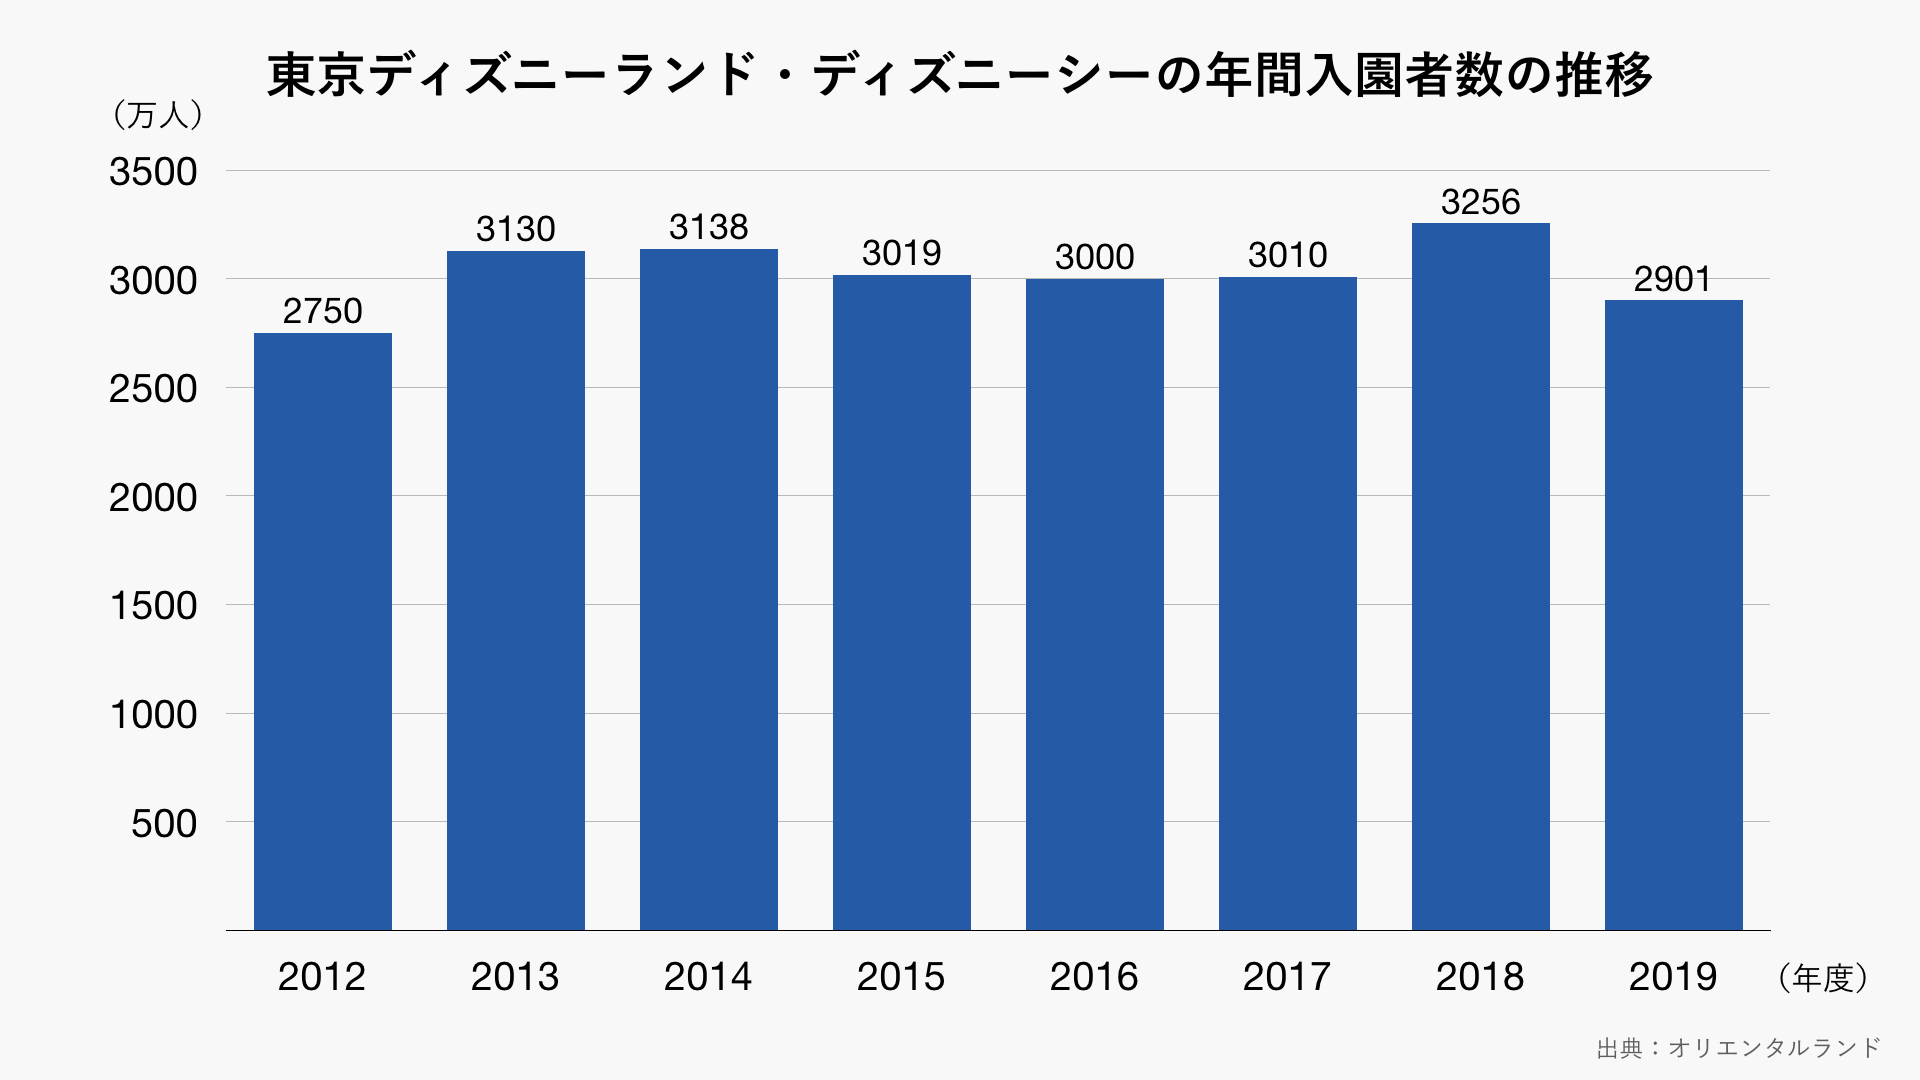 東京ディズニーランドと東京ディズニーシーの年間入園者数の推移のグラフ グラフストック